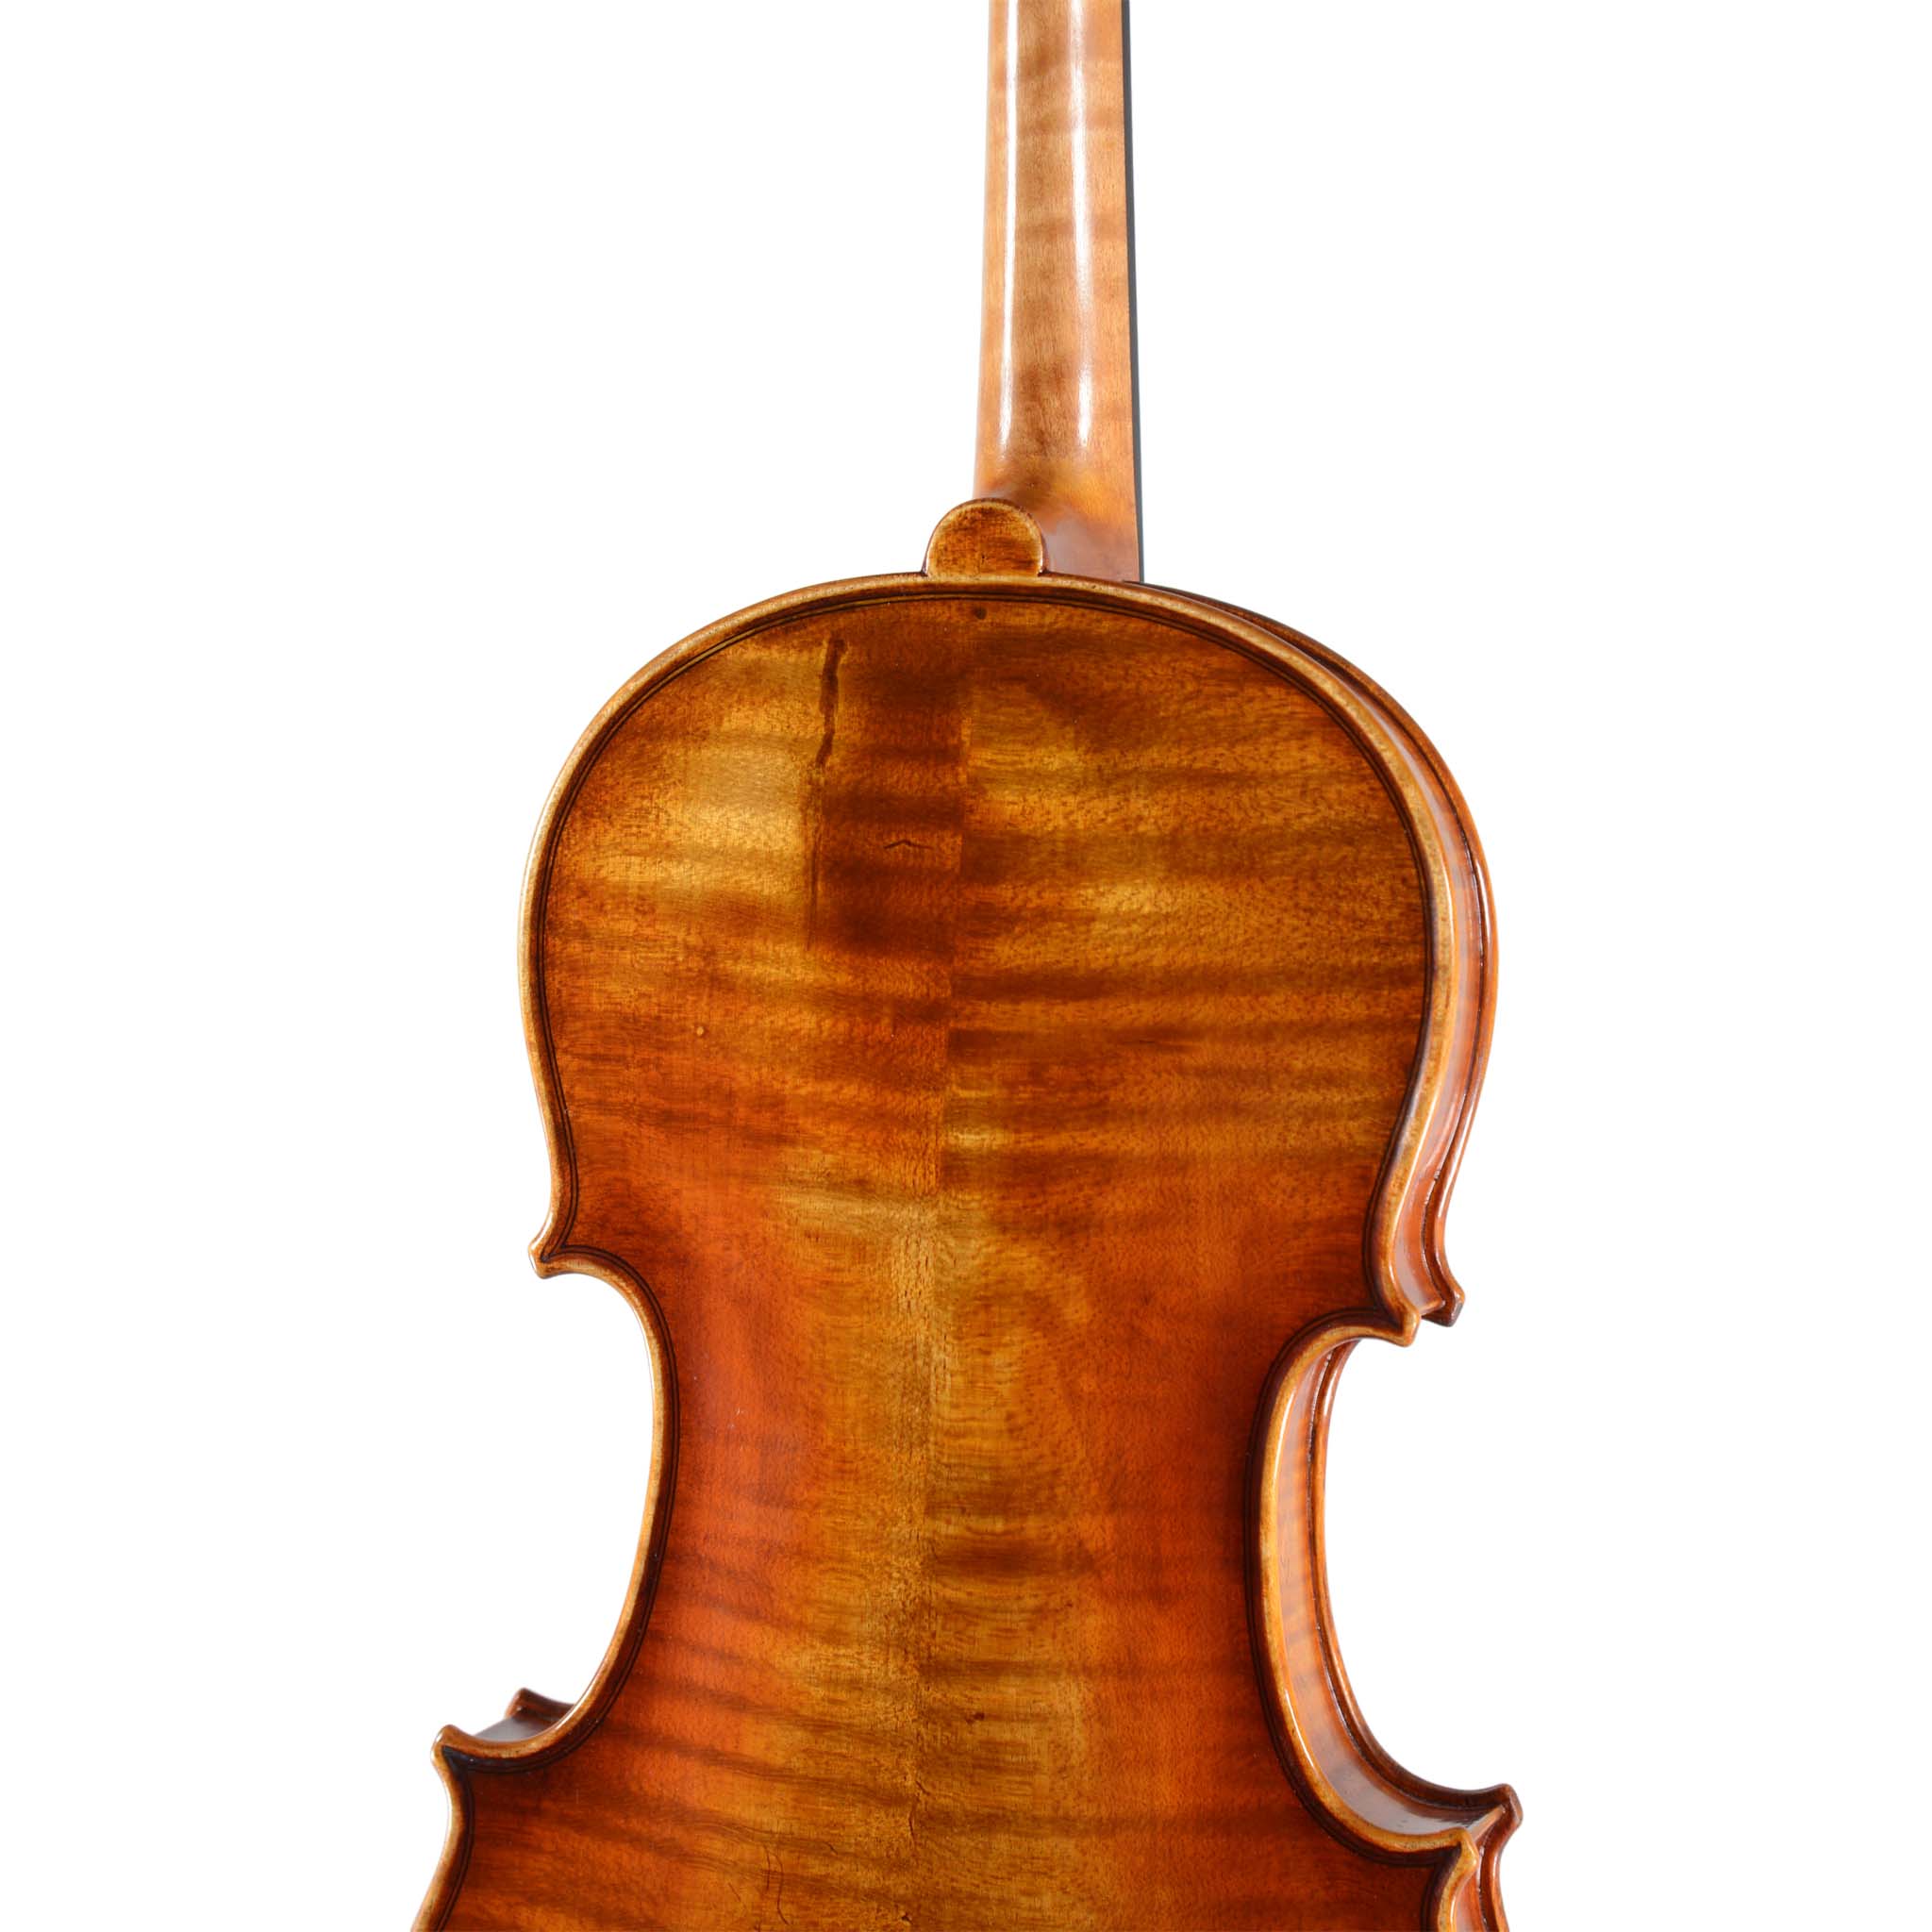 B-stock Holstein Workshop Soil Stradivarius Violin